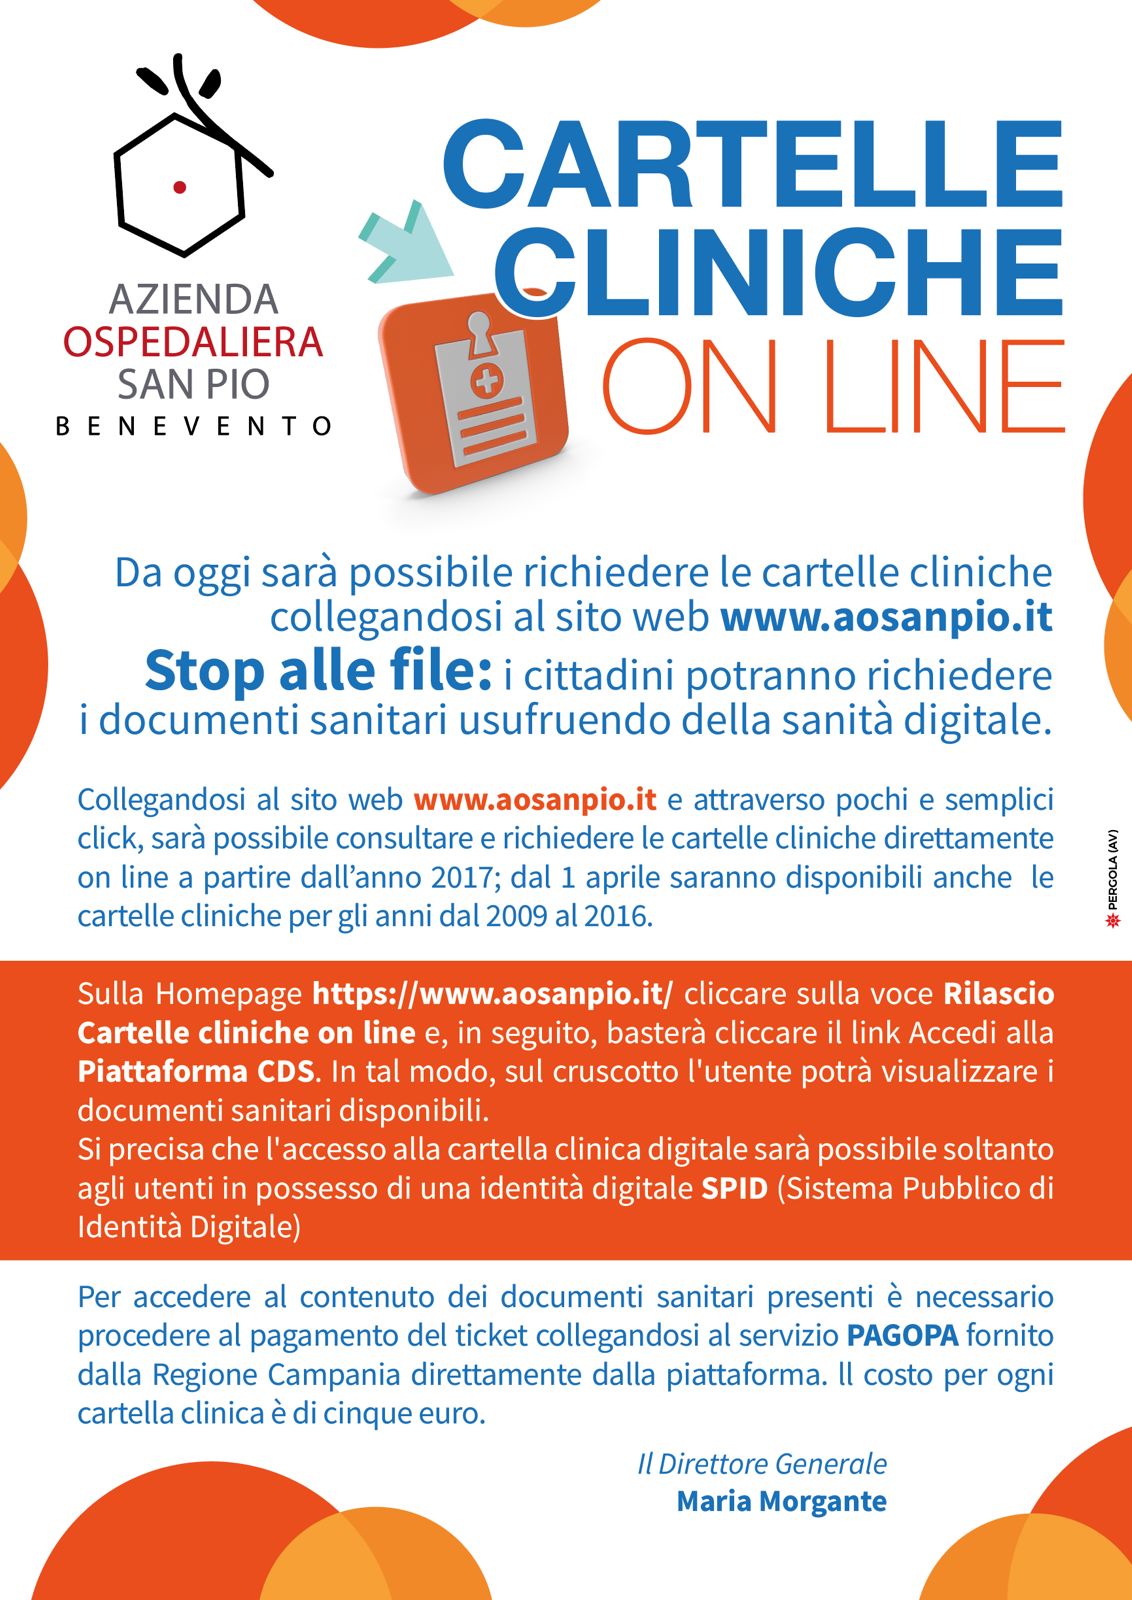 AORN San Pio,da oggi sarà possibile richiedere le  cartelle cliniche online www.aosanpio.it